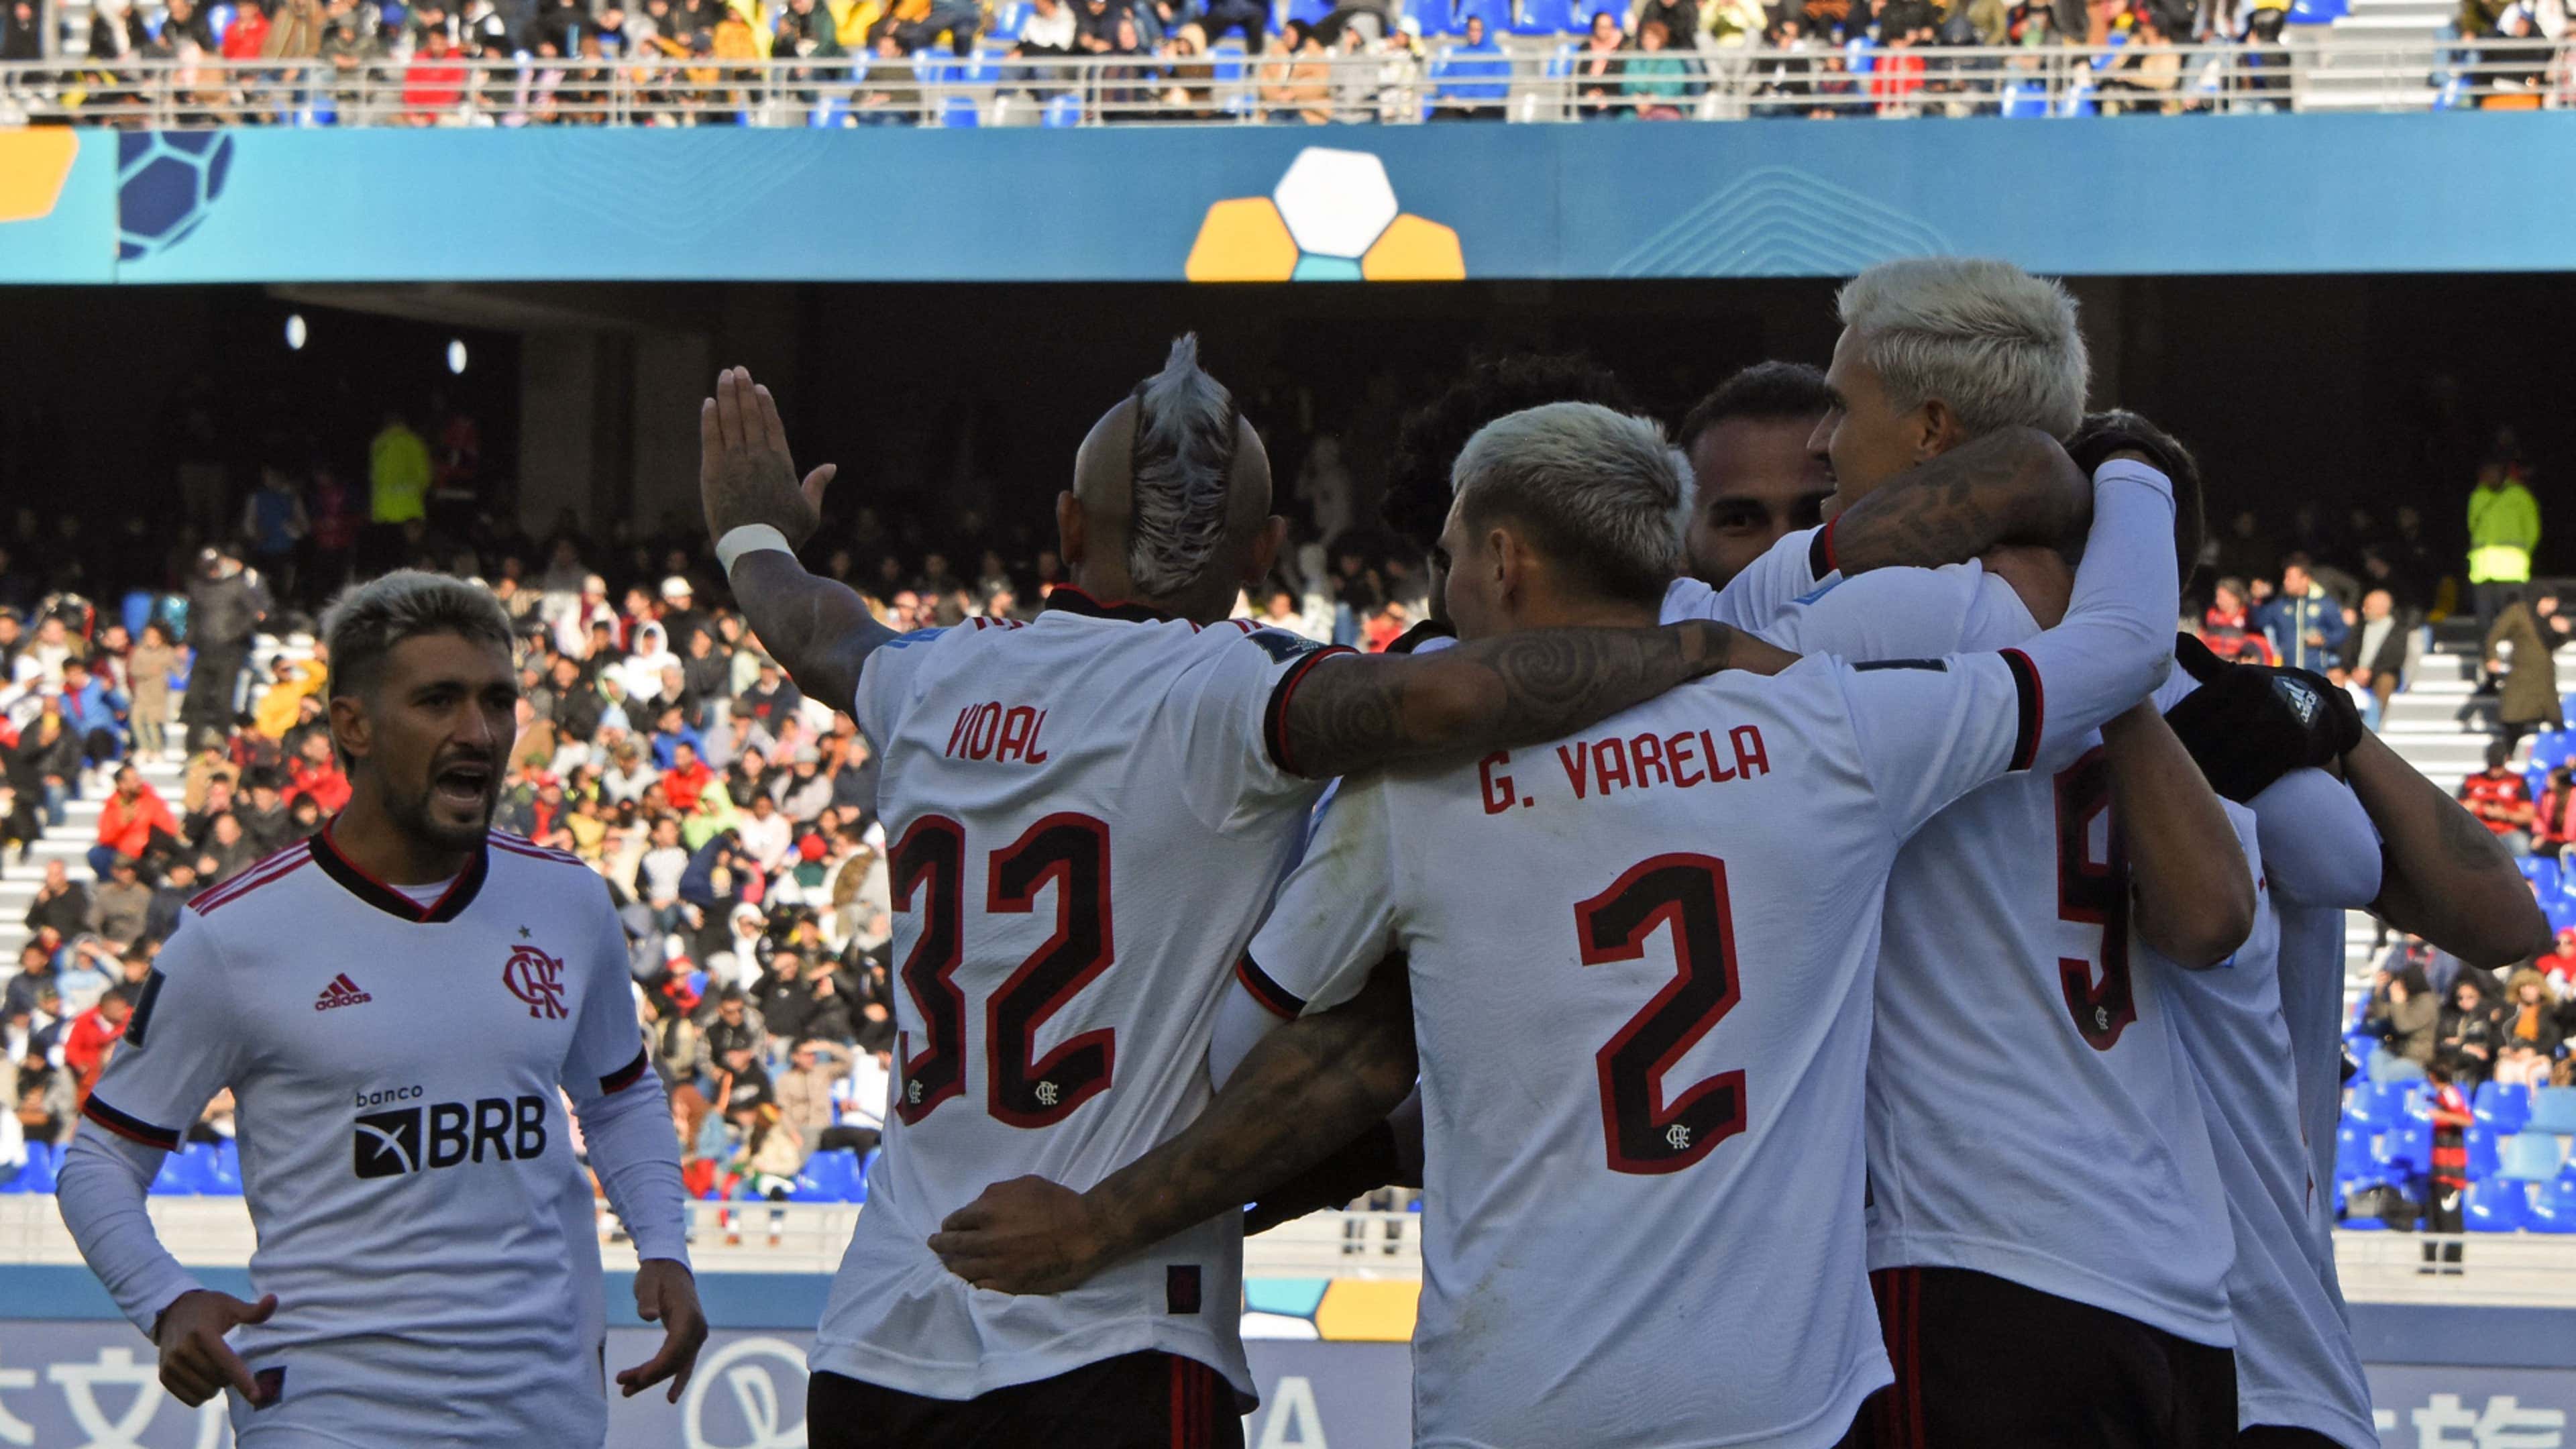 Flamengo se prepara para jogos 'decisivos' em agosto; confira calendário